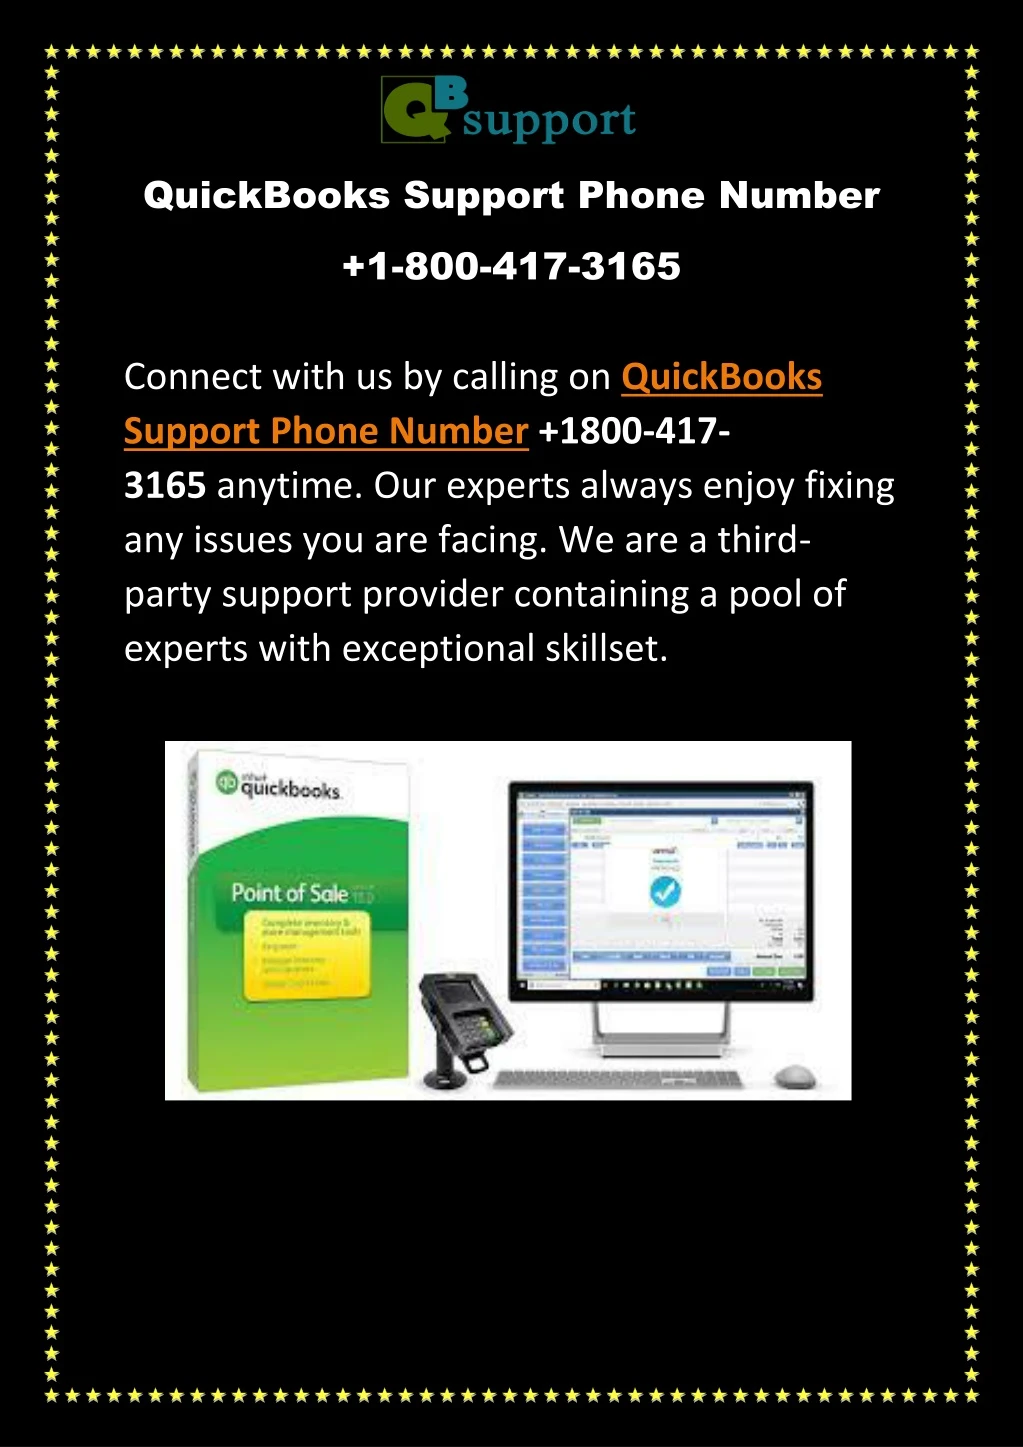 quickbooks support phone number 1 800 417 3165